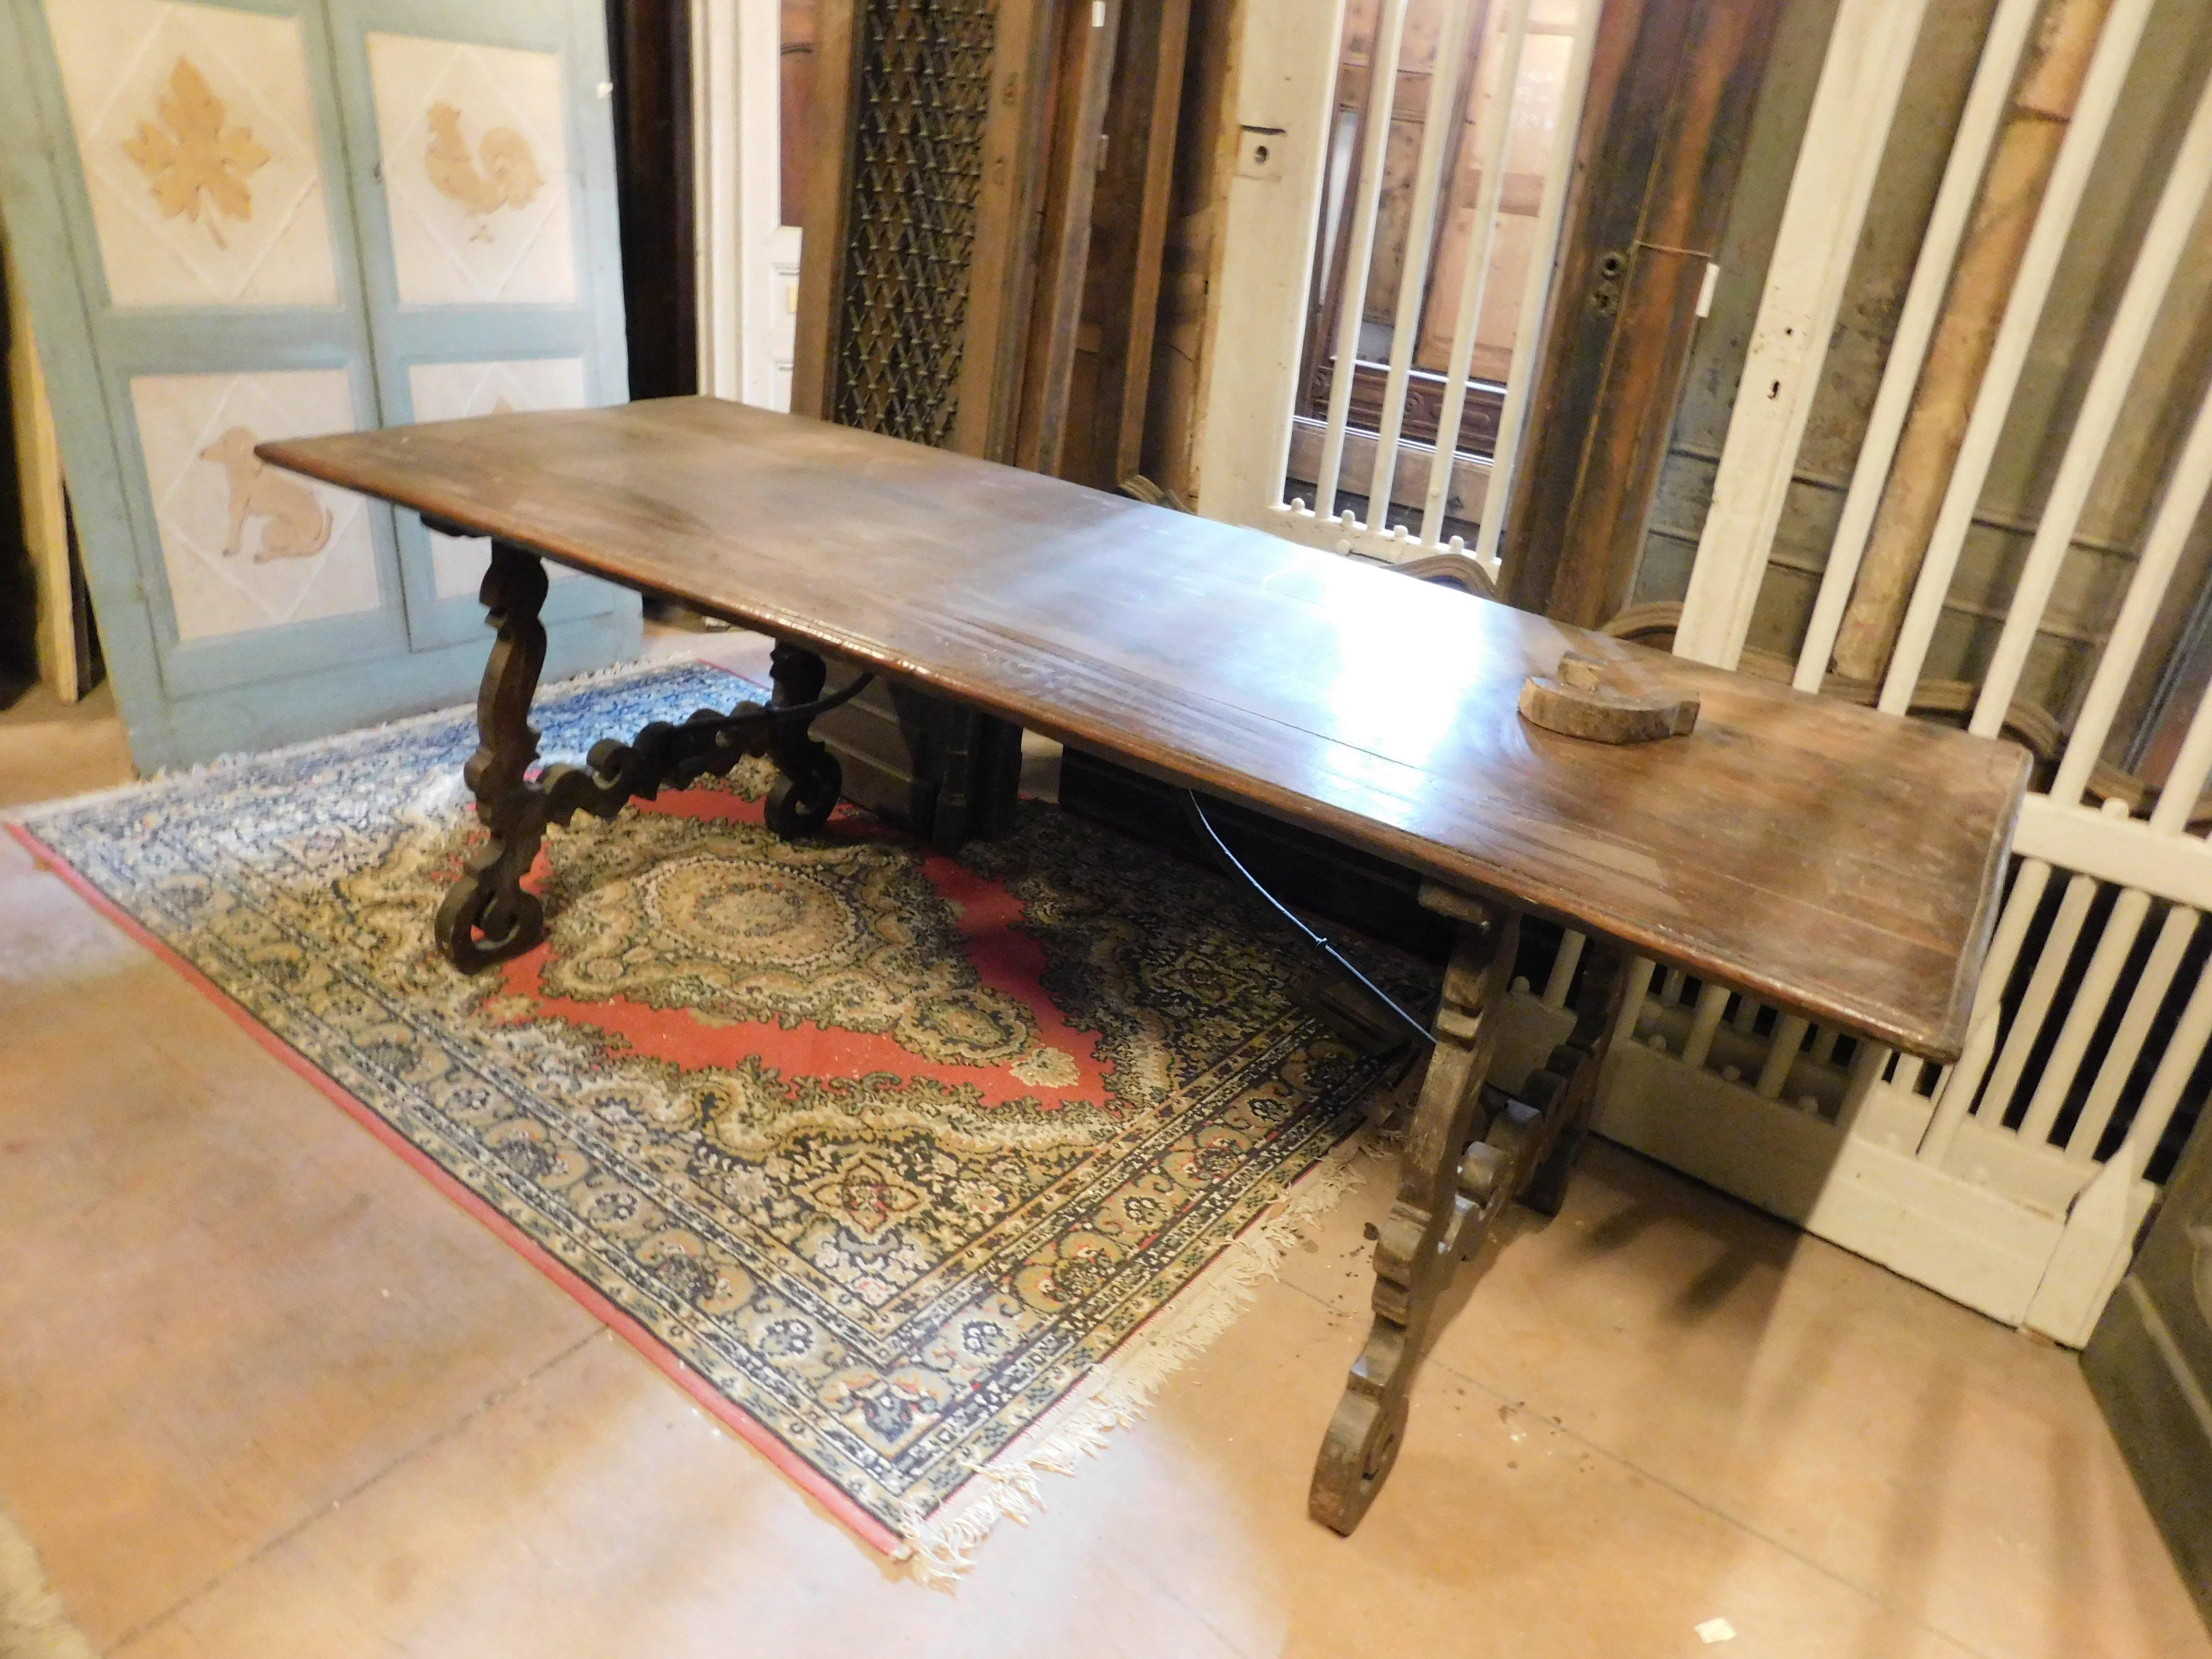 Ancienne table Fratino en noyer massif, très riche avec des pieds ondulés et une base de table en fer, construite au début des années 1800 en Italie, dans le style des tables espagnoles.
Magnifique comme table de salle à manger ou comme table